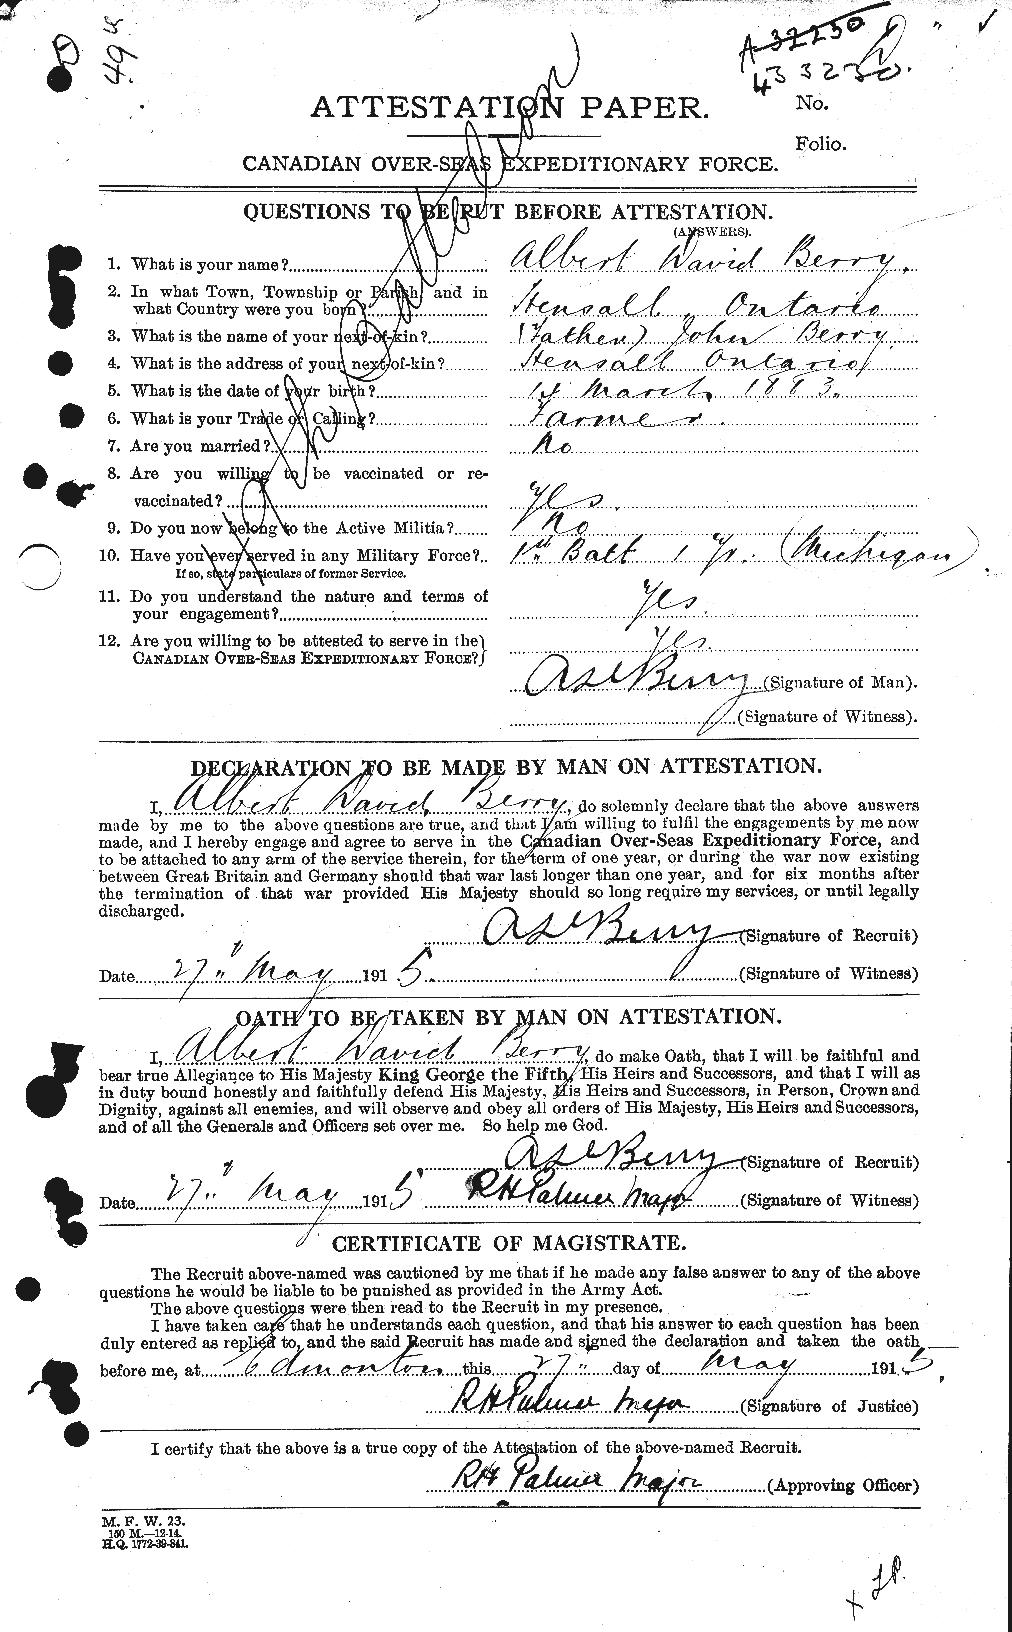 Dossiers du Personnel de la Première Guerre mondiale - CEC 240764a